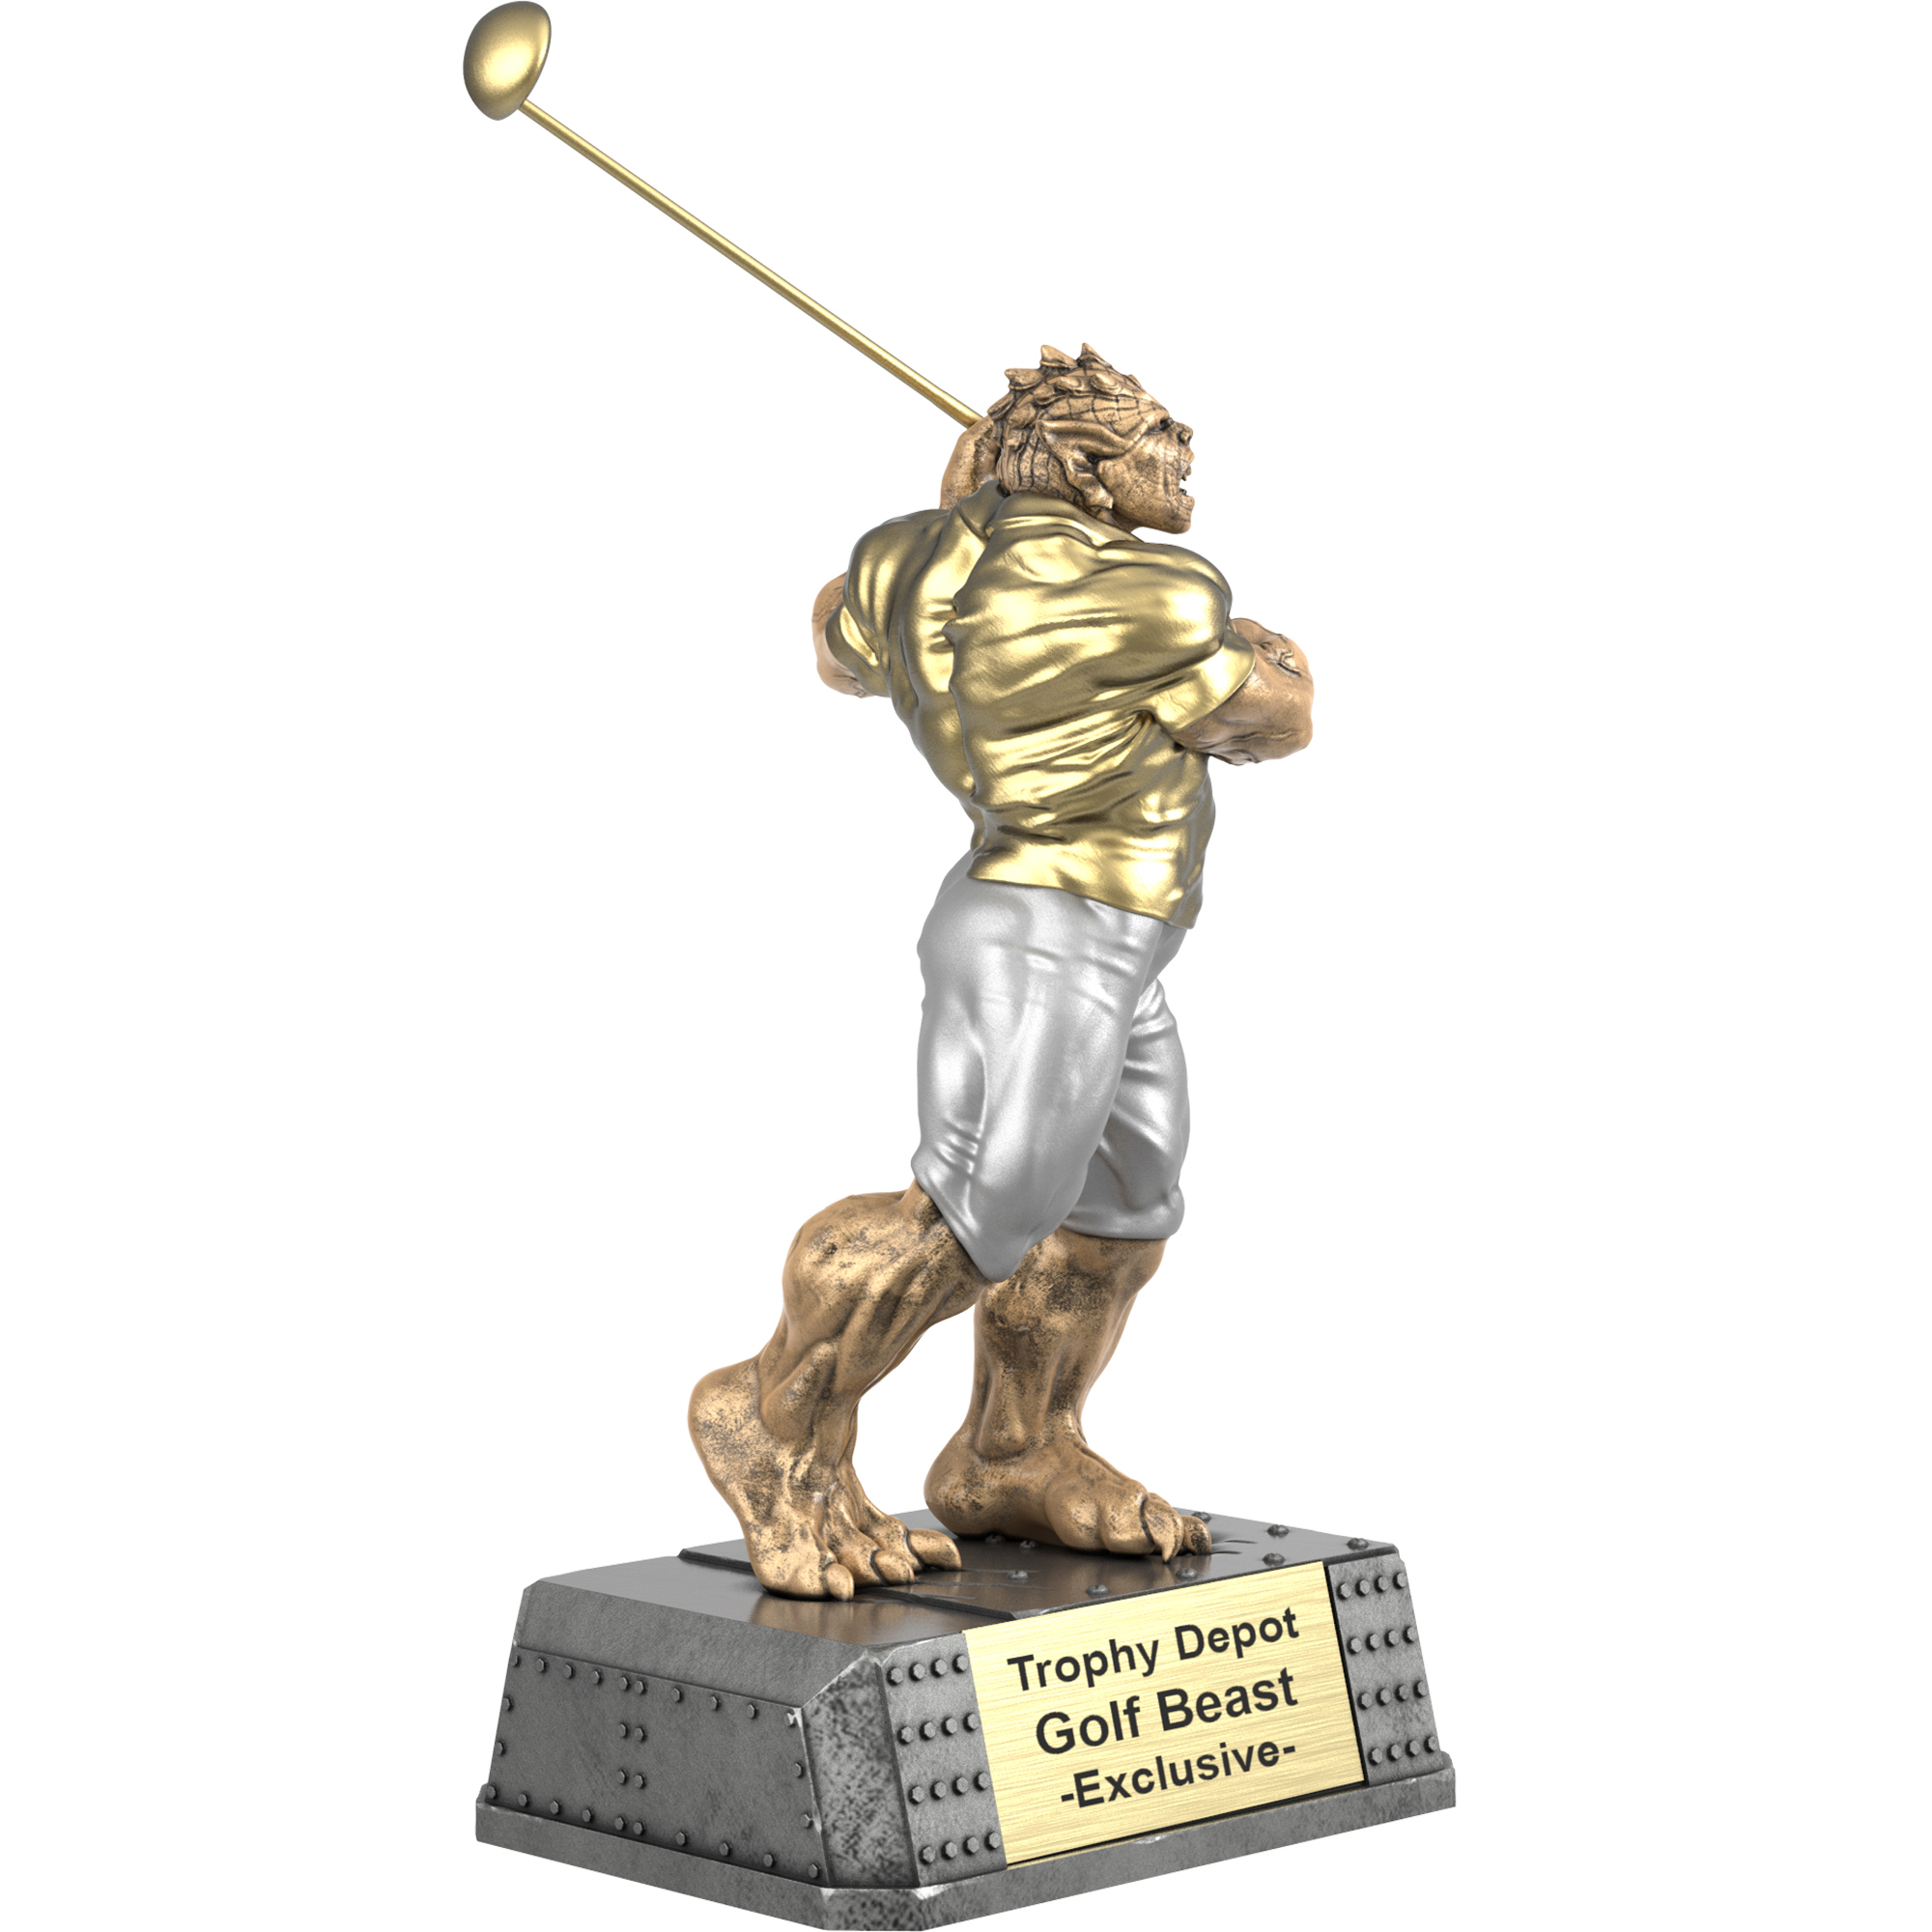 Golf Beast Sculpture Trophy - 10.25 inch